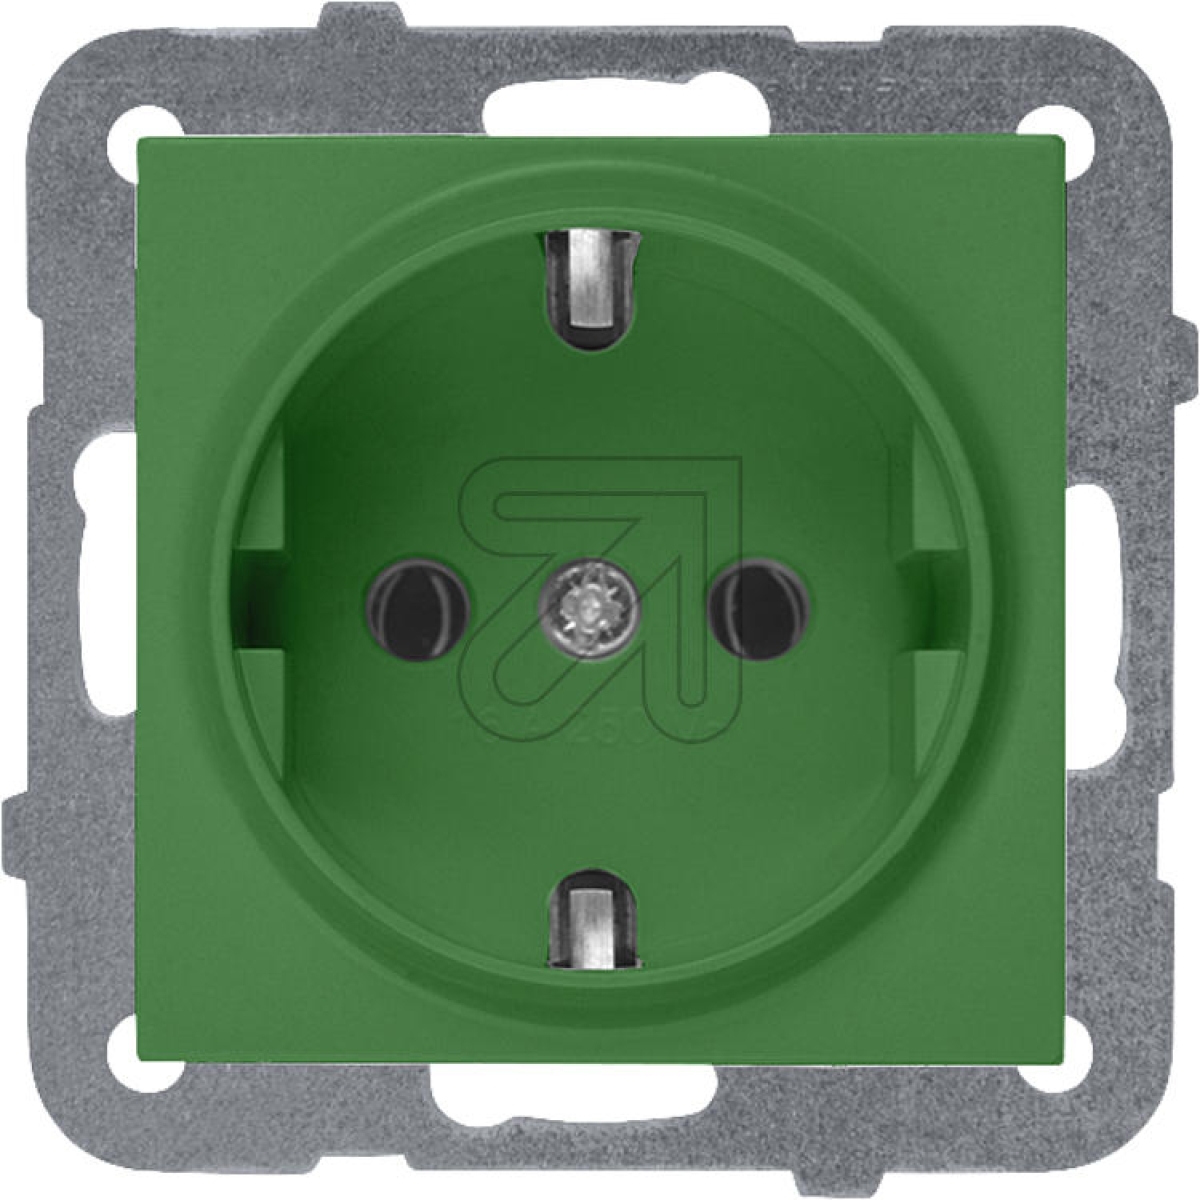 PanasonicKarre 55 socket green WDTT03022GY-EU1Article-No: 076115